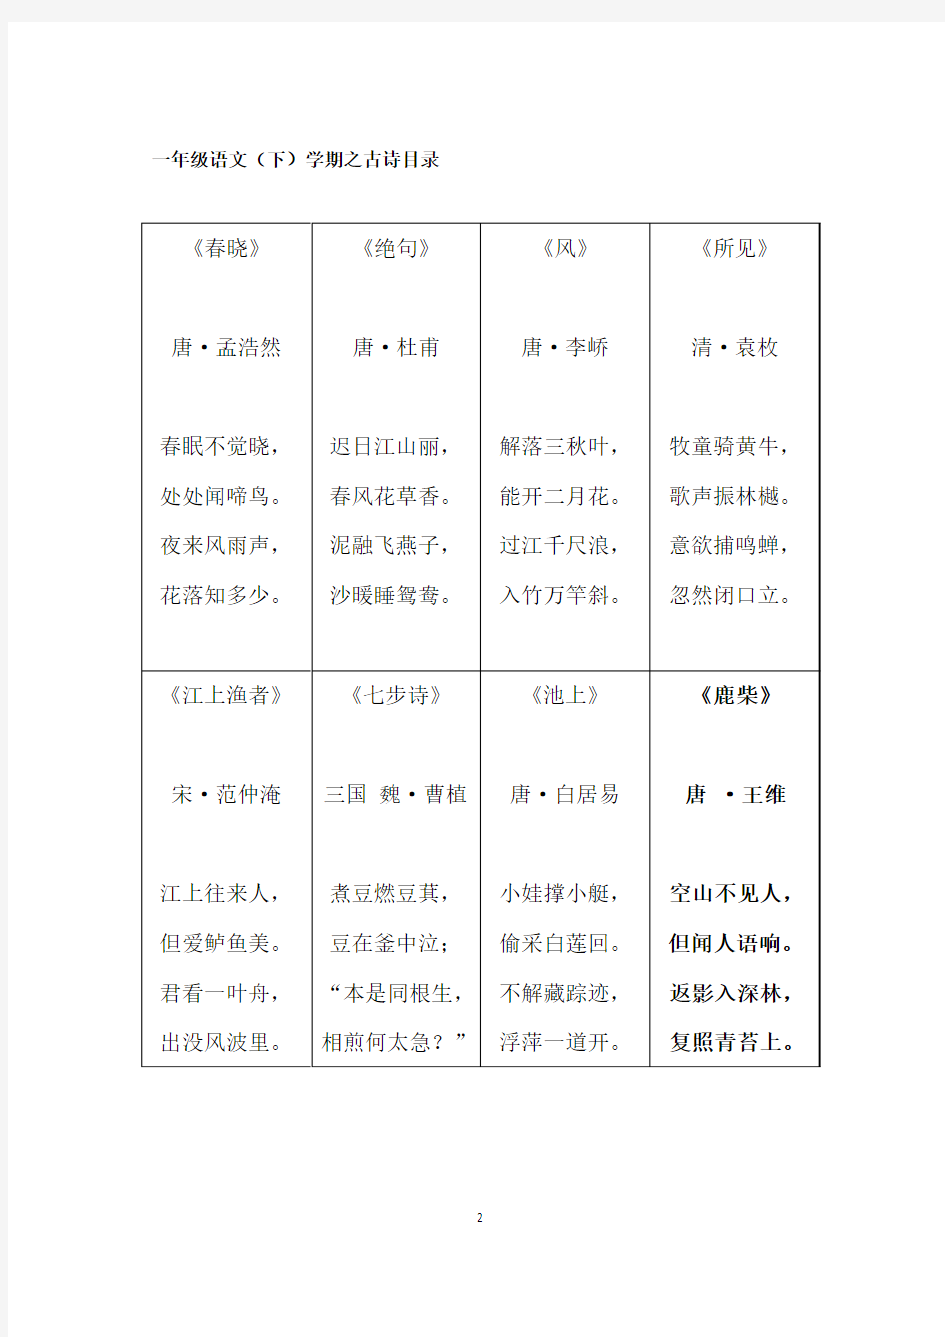 上海小学语文一年级古诗目录及参考注释 2017.04.11